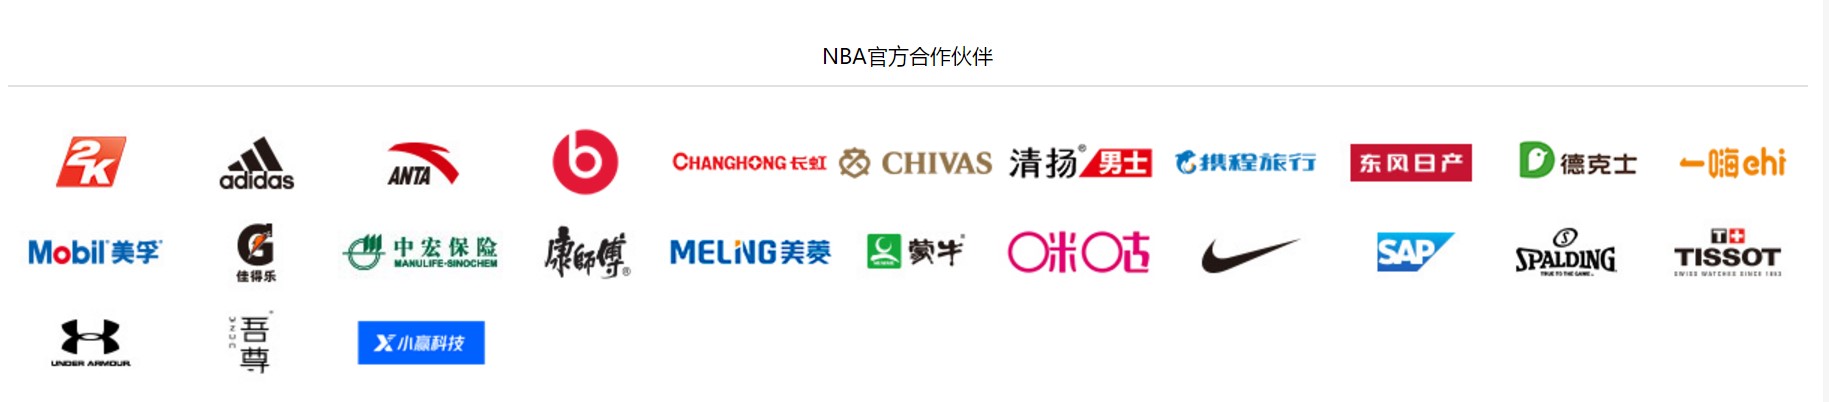 　　NBA中国官方合作伙伴 来源：NBA中国官网